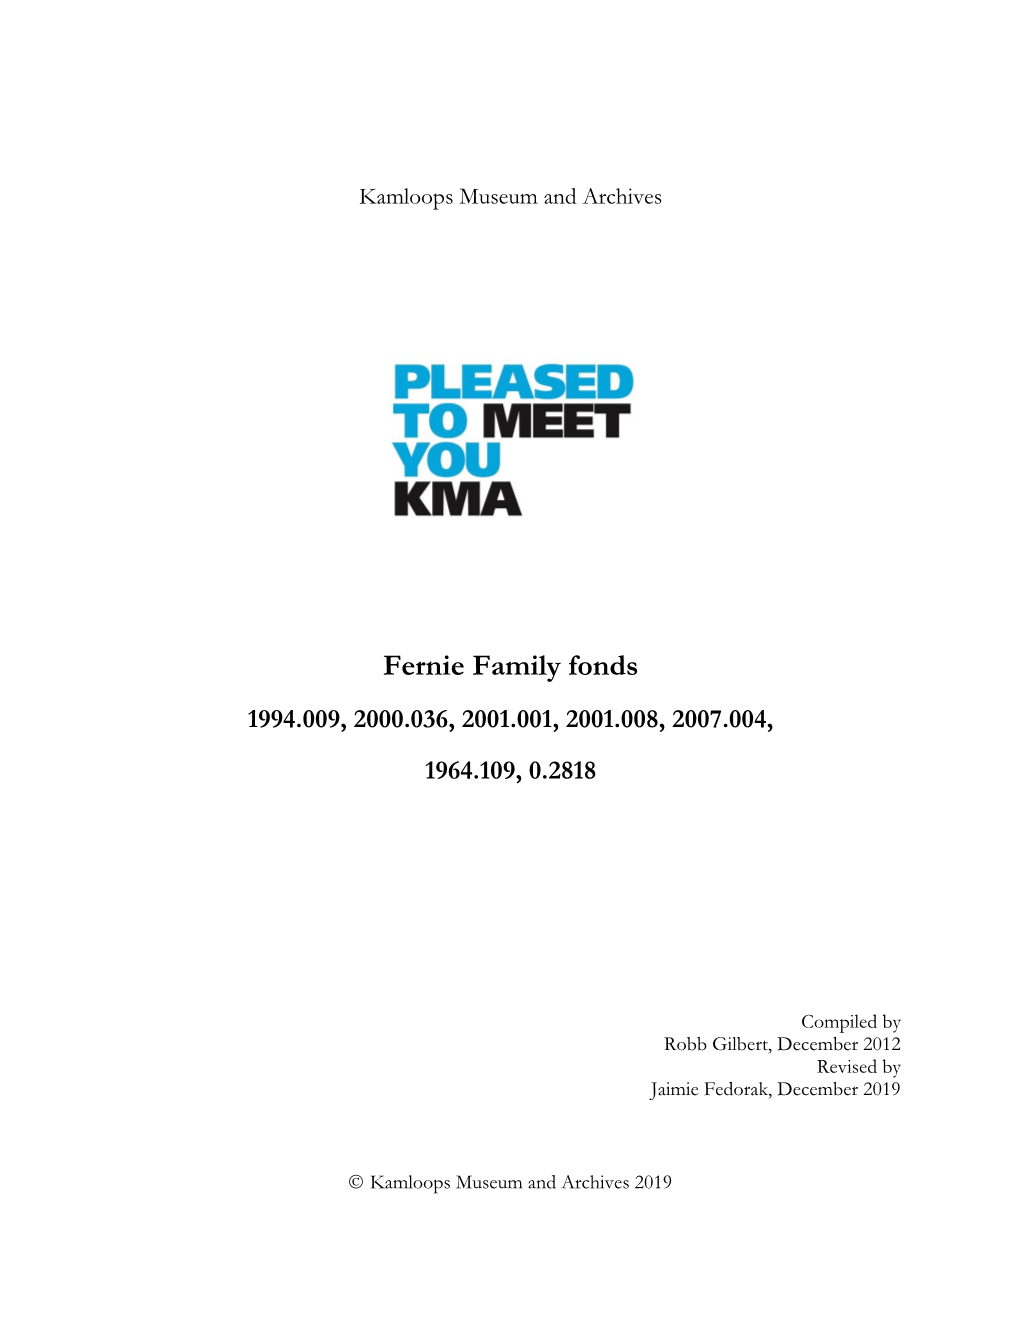 Fernie Family Fonds 1994.009, 2000.036, 2001.001, 2001.008, 2007.004, 1964.109, 0.2818